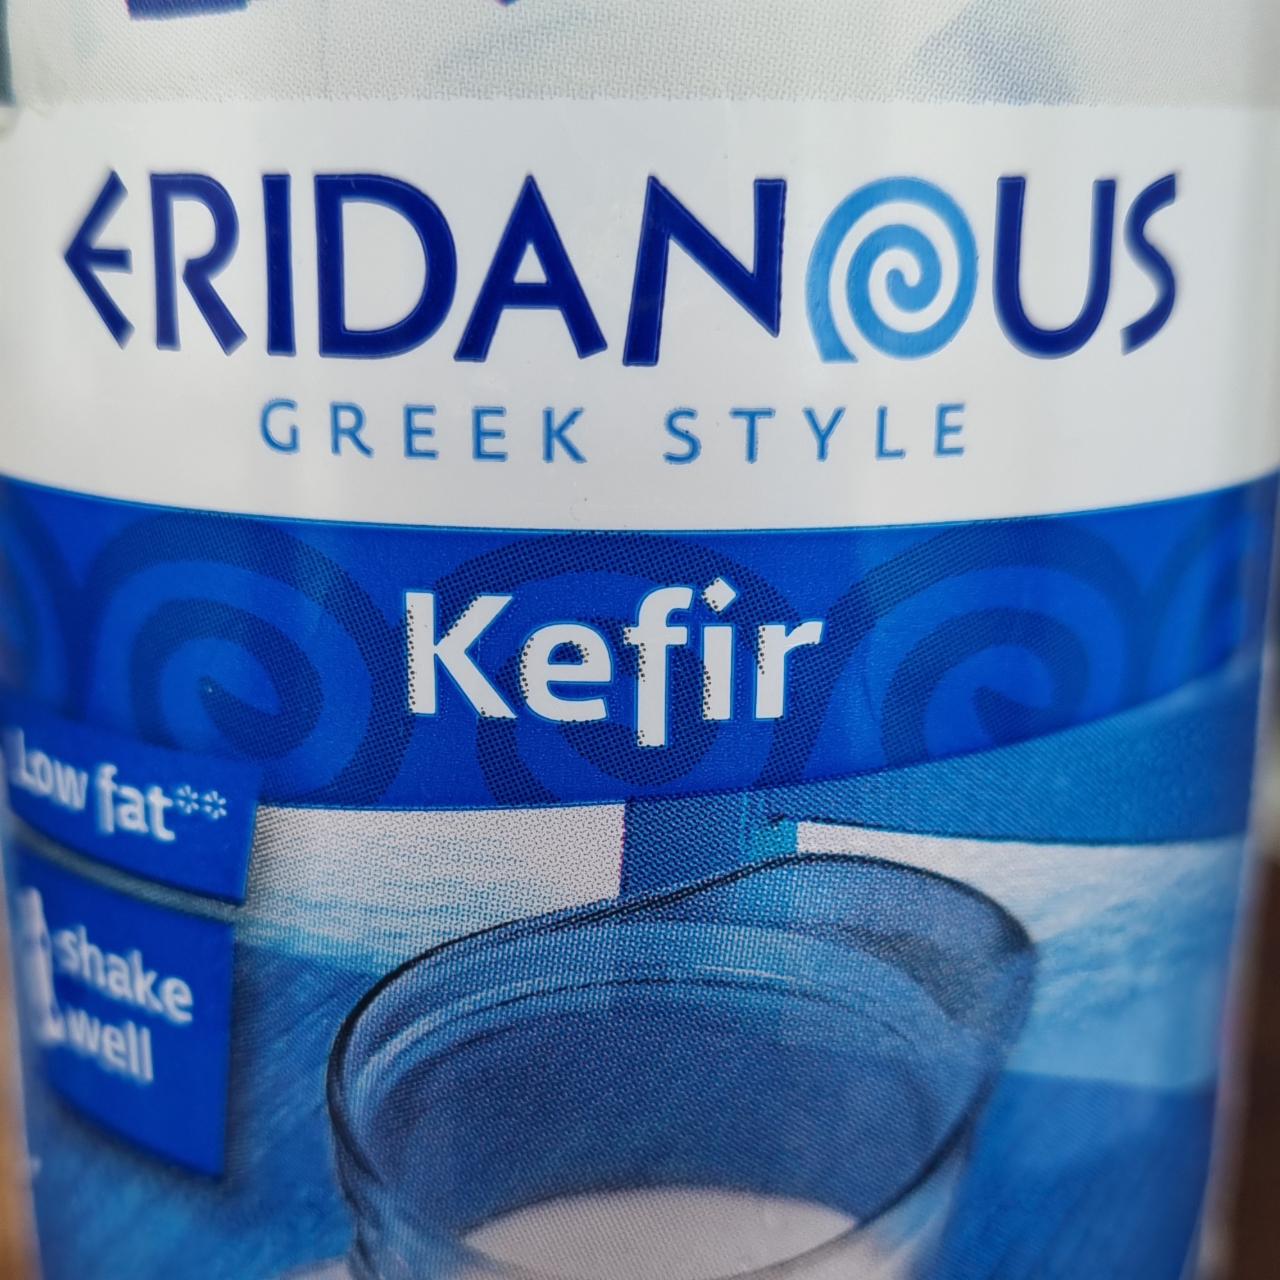 Fotografie - Greek Style Kefir Low Fat Eridanous